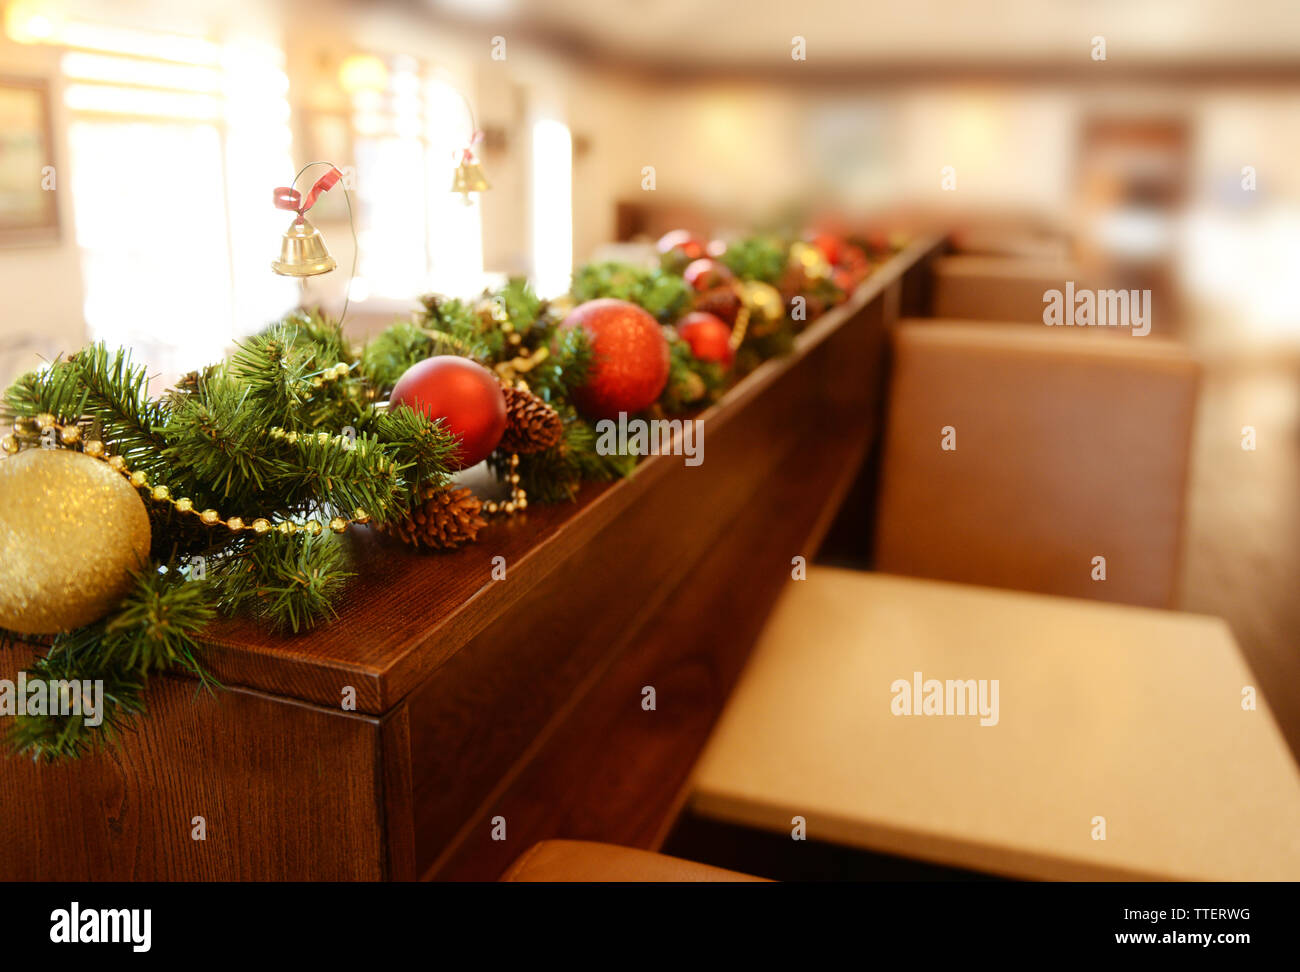 Adornos de Navidad en un mostrador de madera en cafe Fotografía de stock -  Alamy